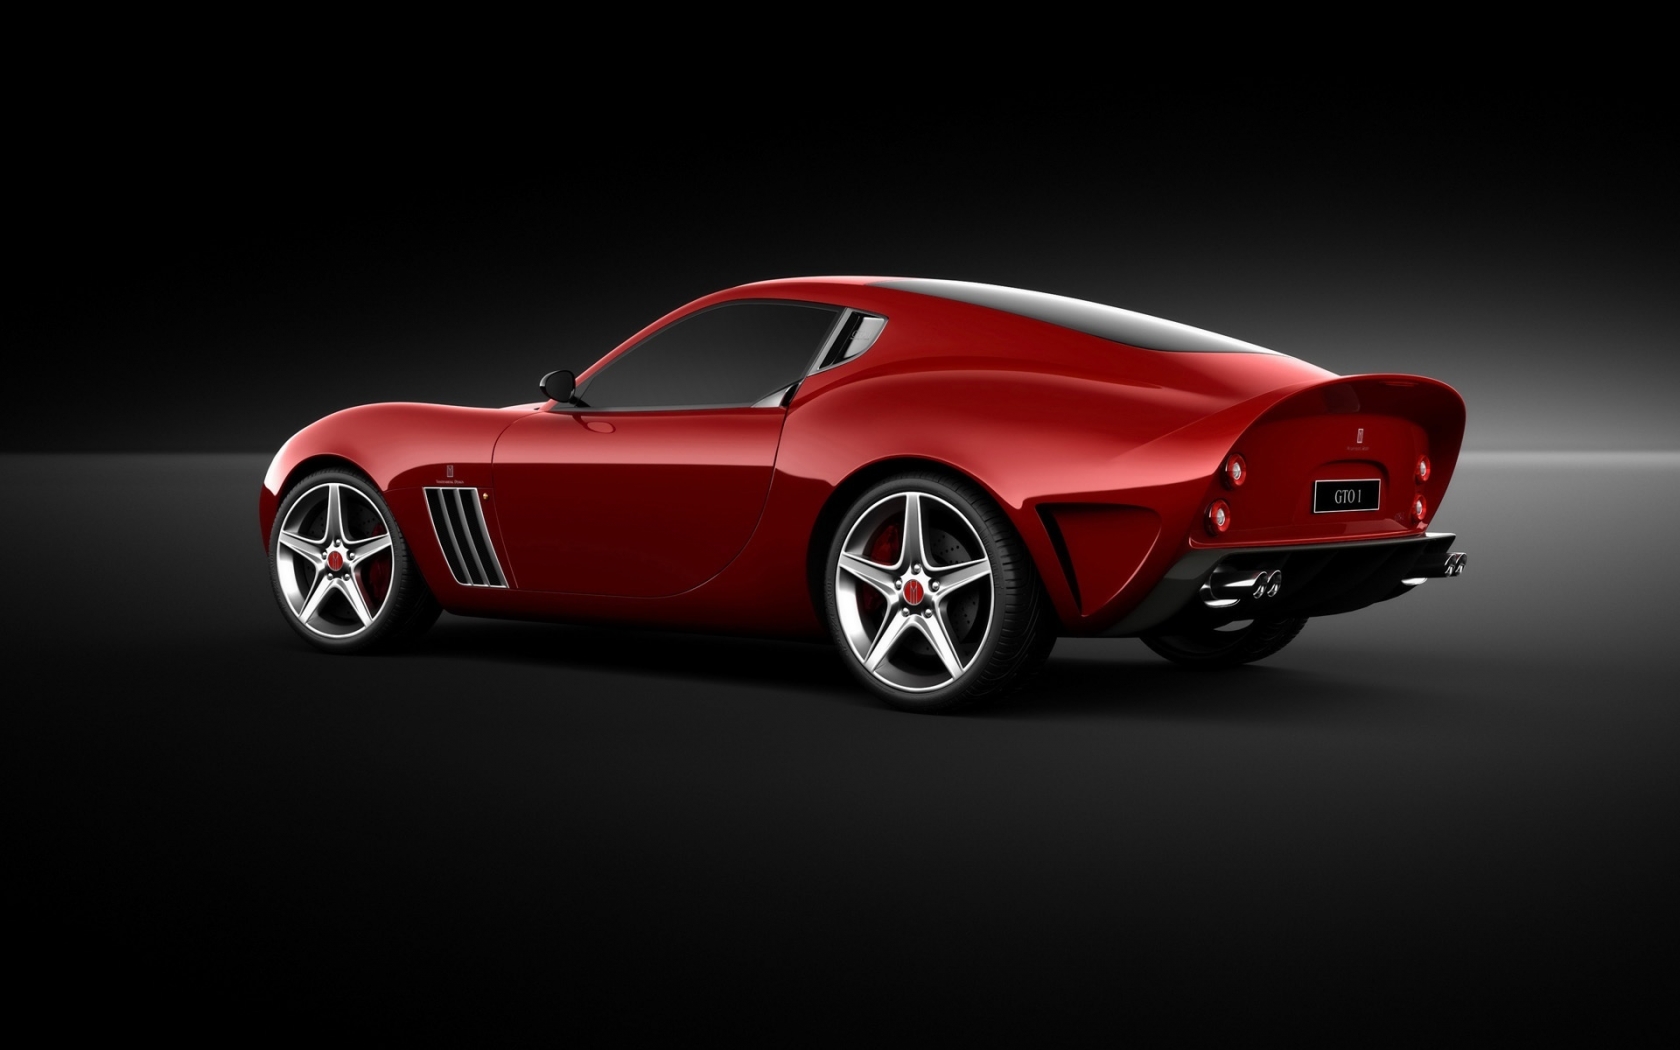 Ferrari Vandenbrink 599 GTO 2009 for 1680 x 1050 widescreen resolution